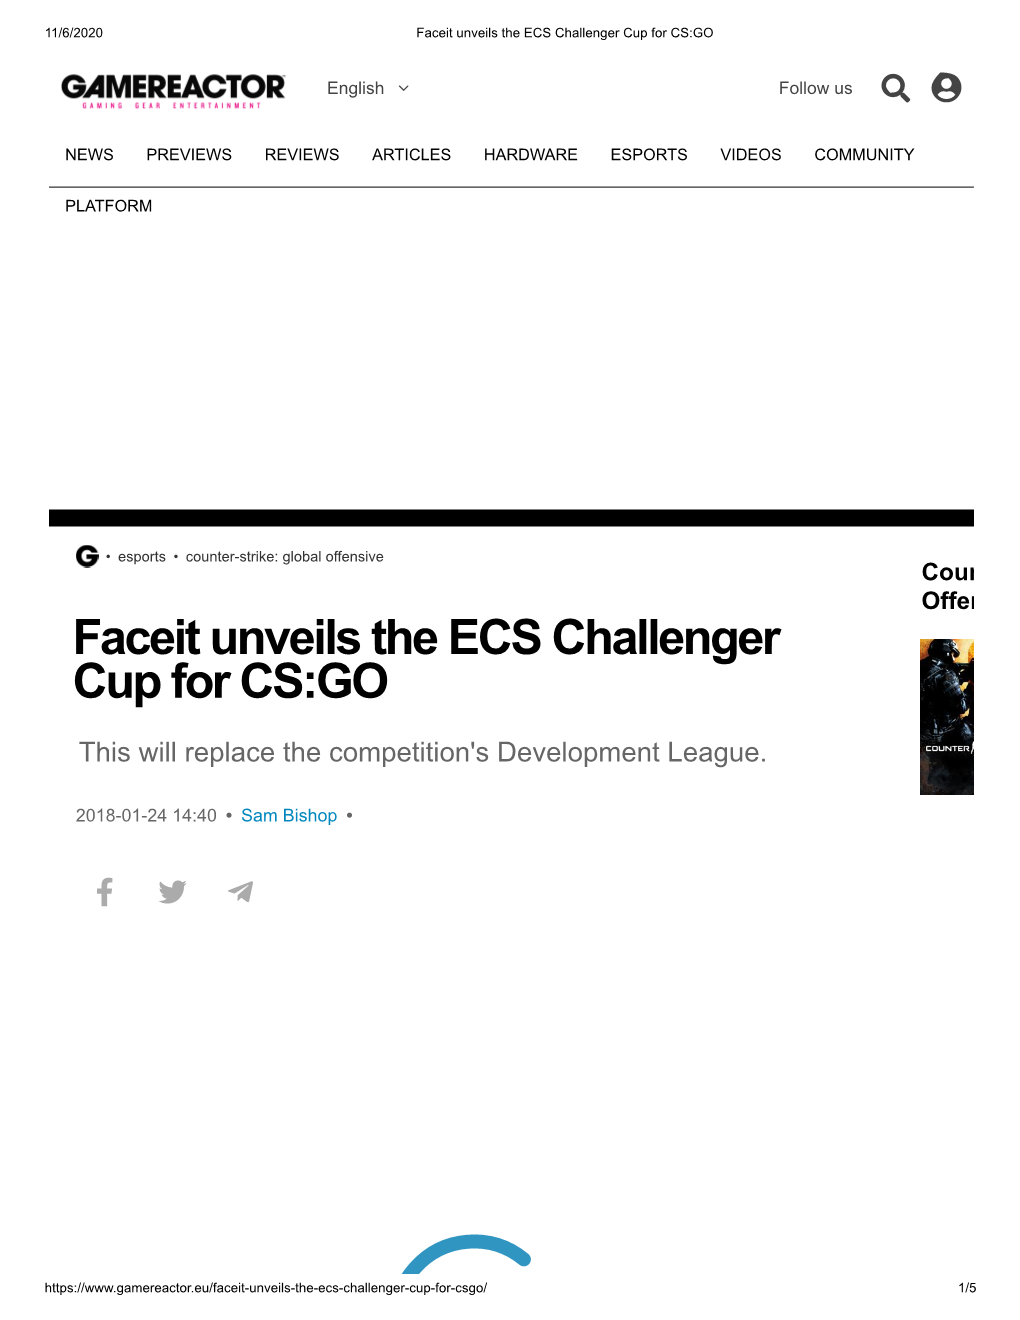 Faceit Unveils the ECS Challenger Cup for CS:GO